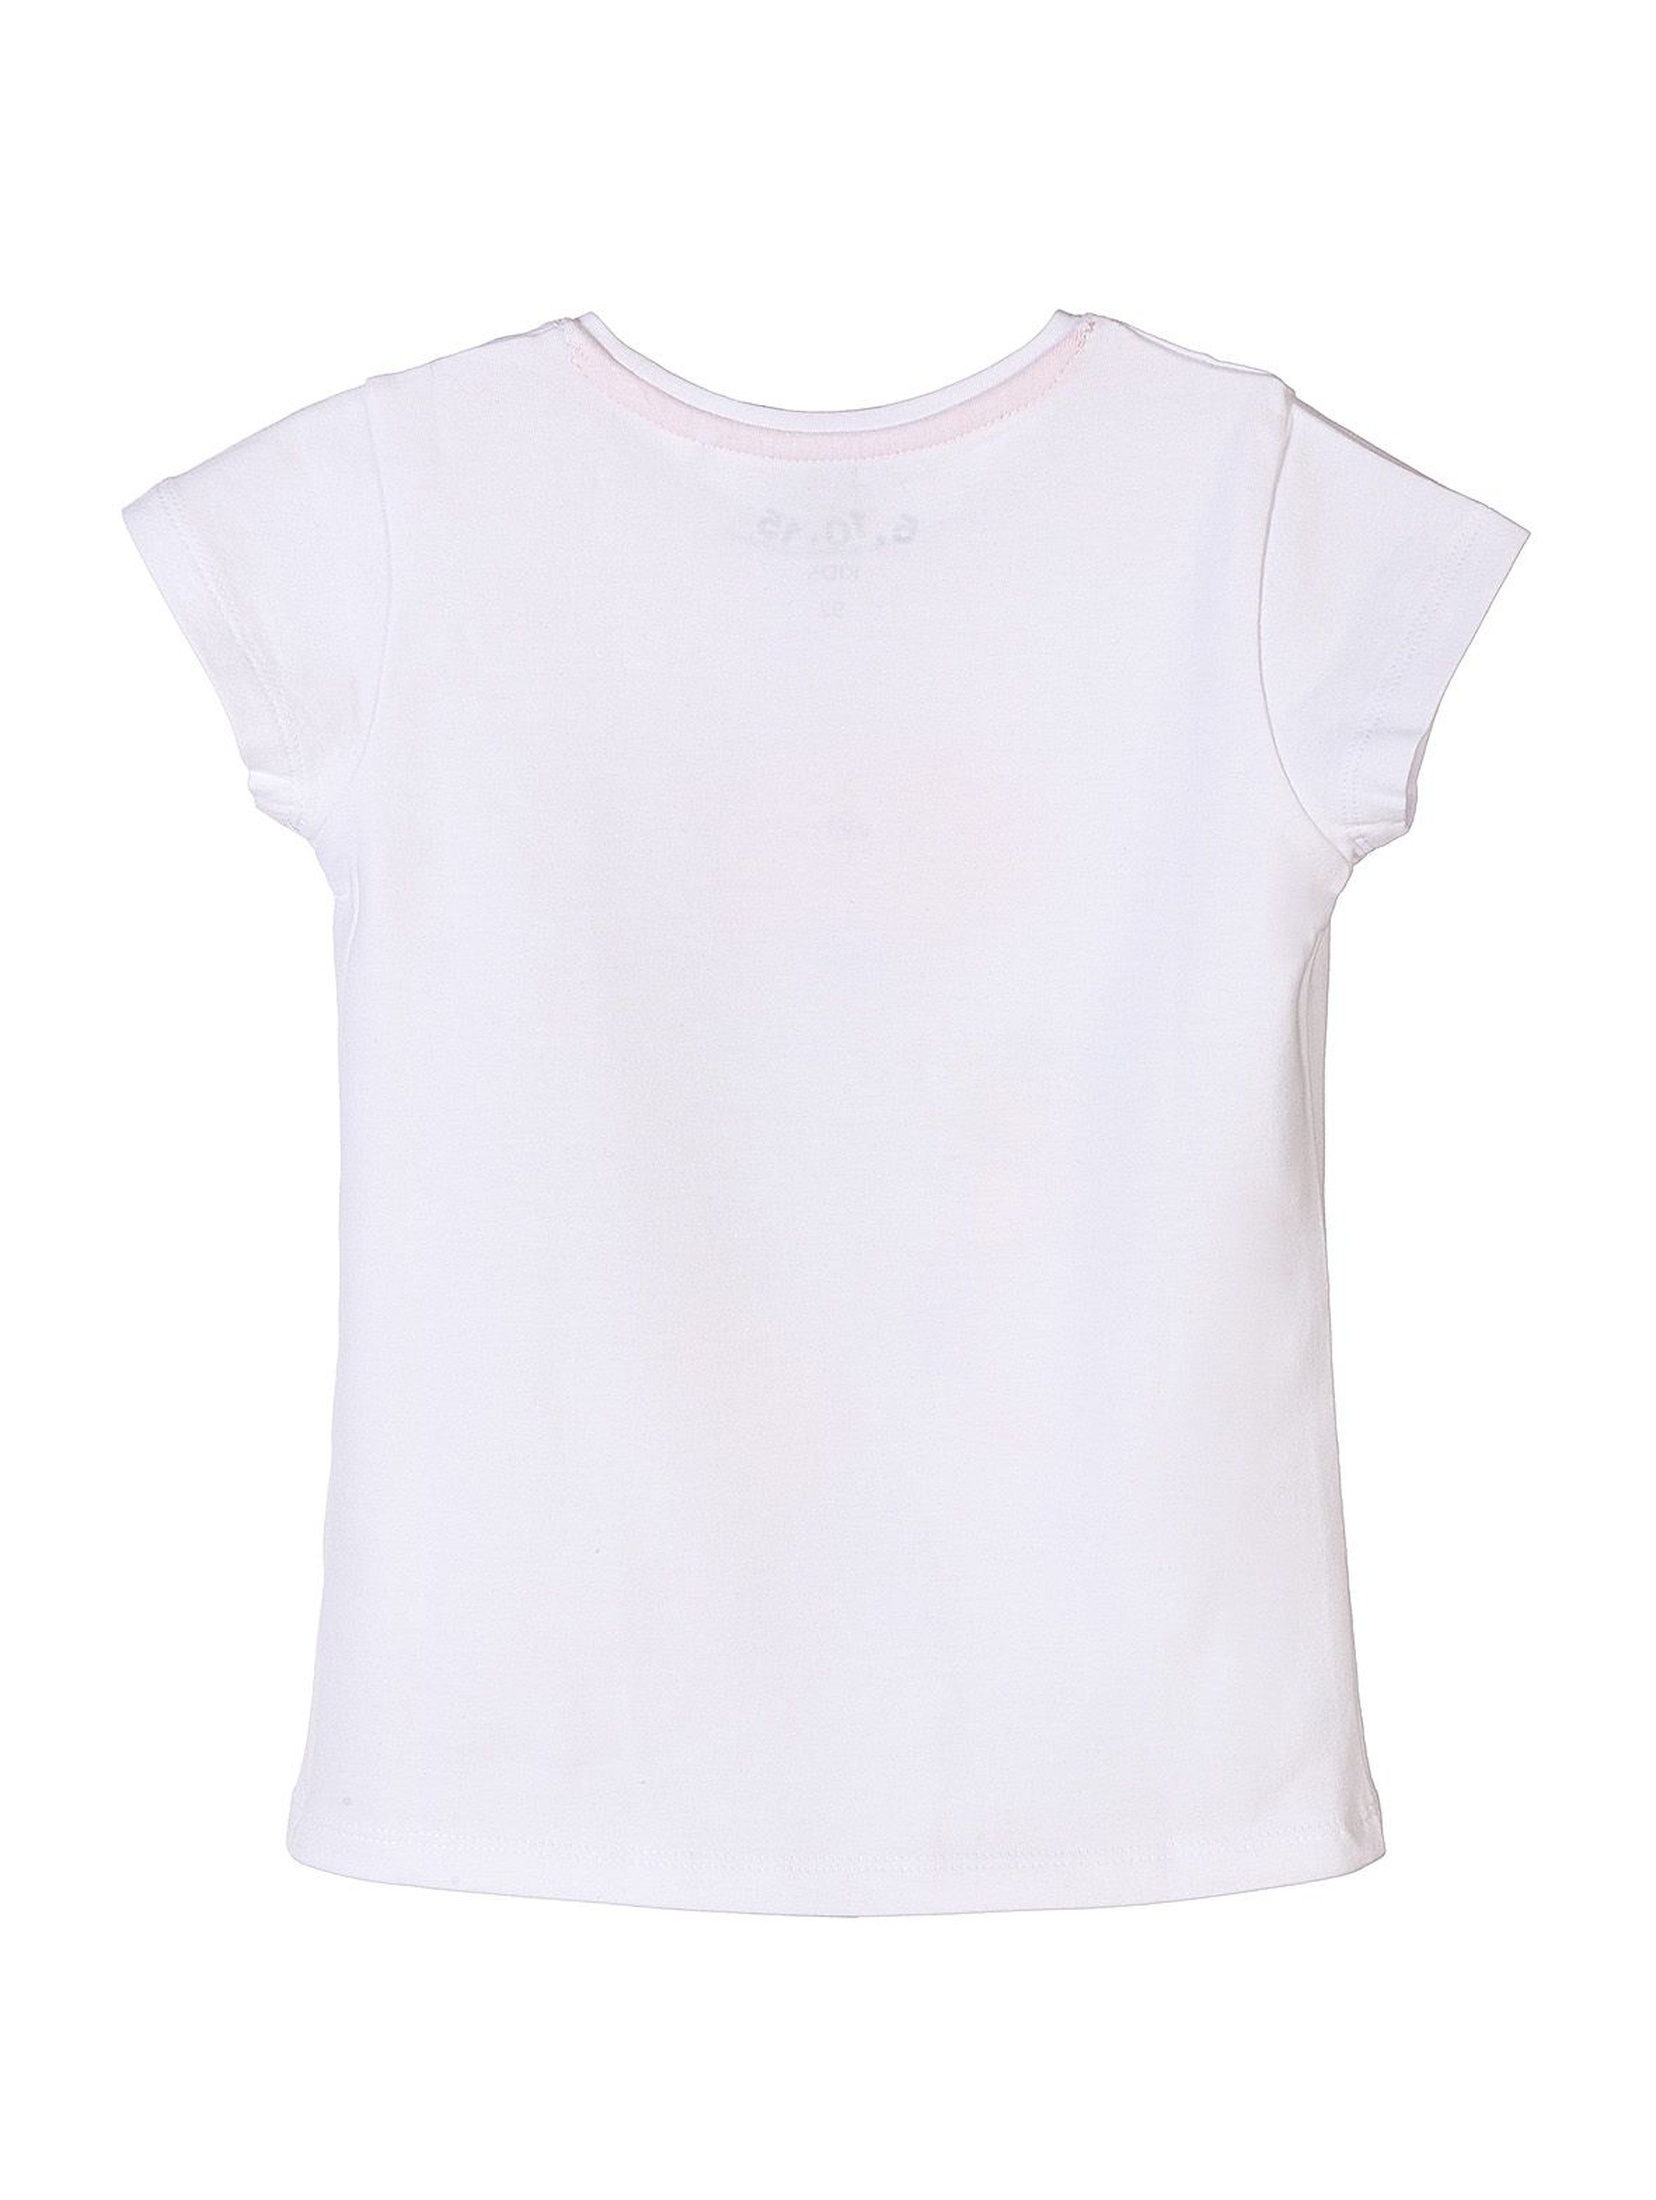 Biały t-shirt dla dziewczynki z kolorowymi nadrukami- syrenki